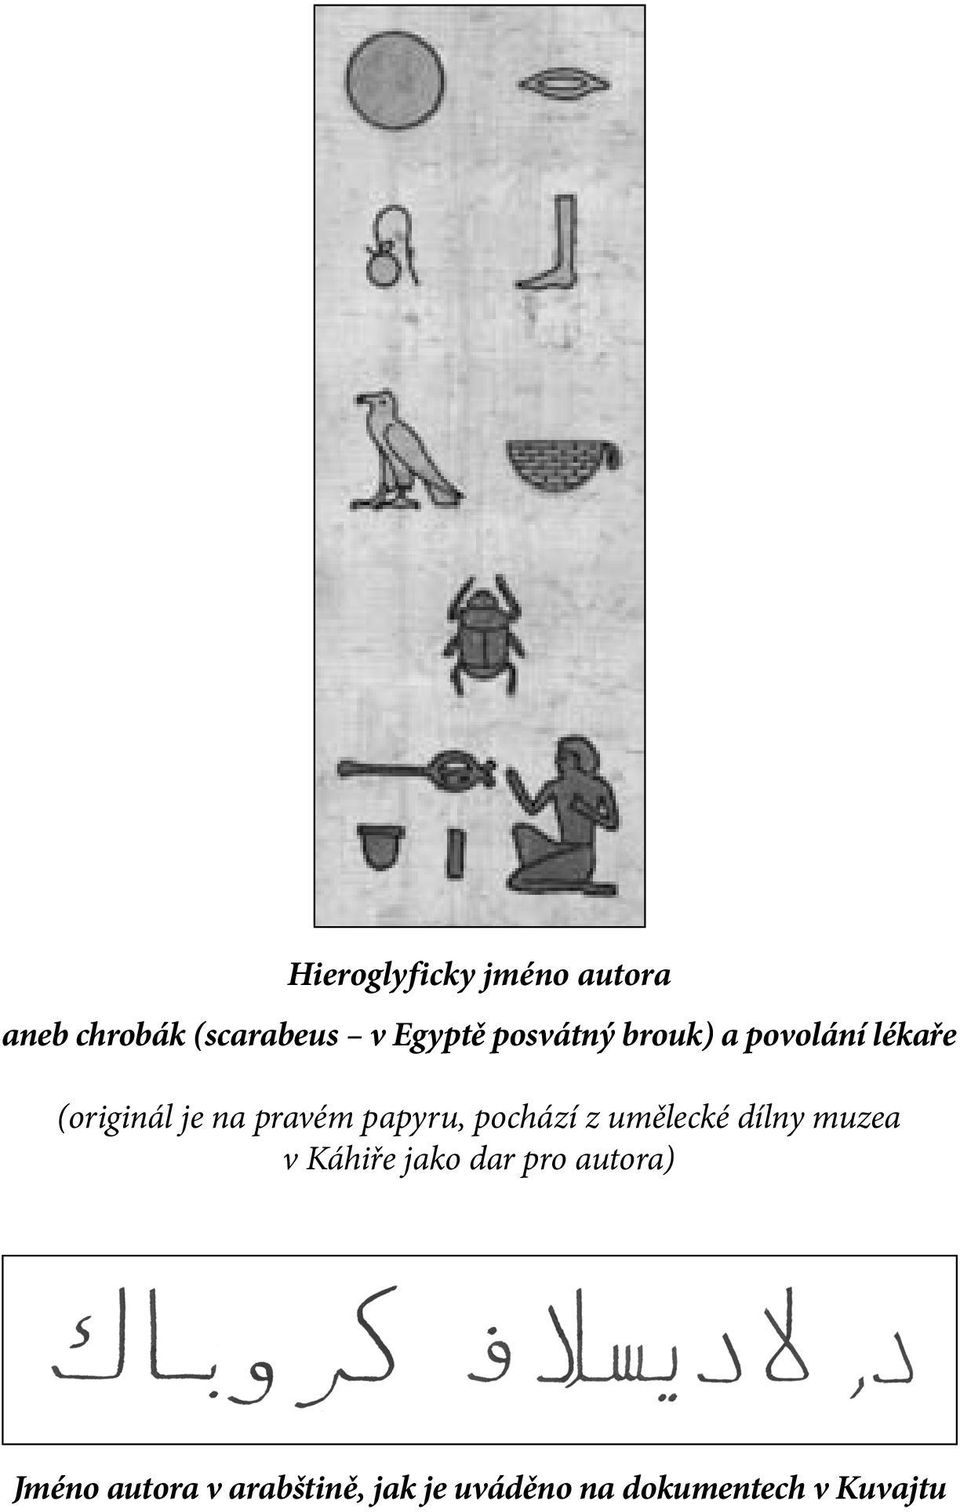 papyru, pochází z umělecké dílny muzea v Káhiře jako dar pro